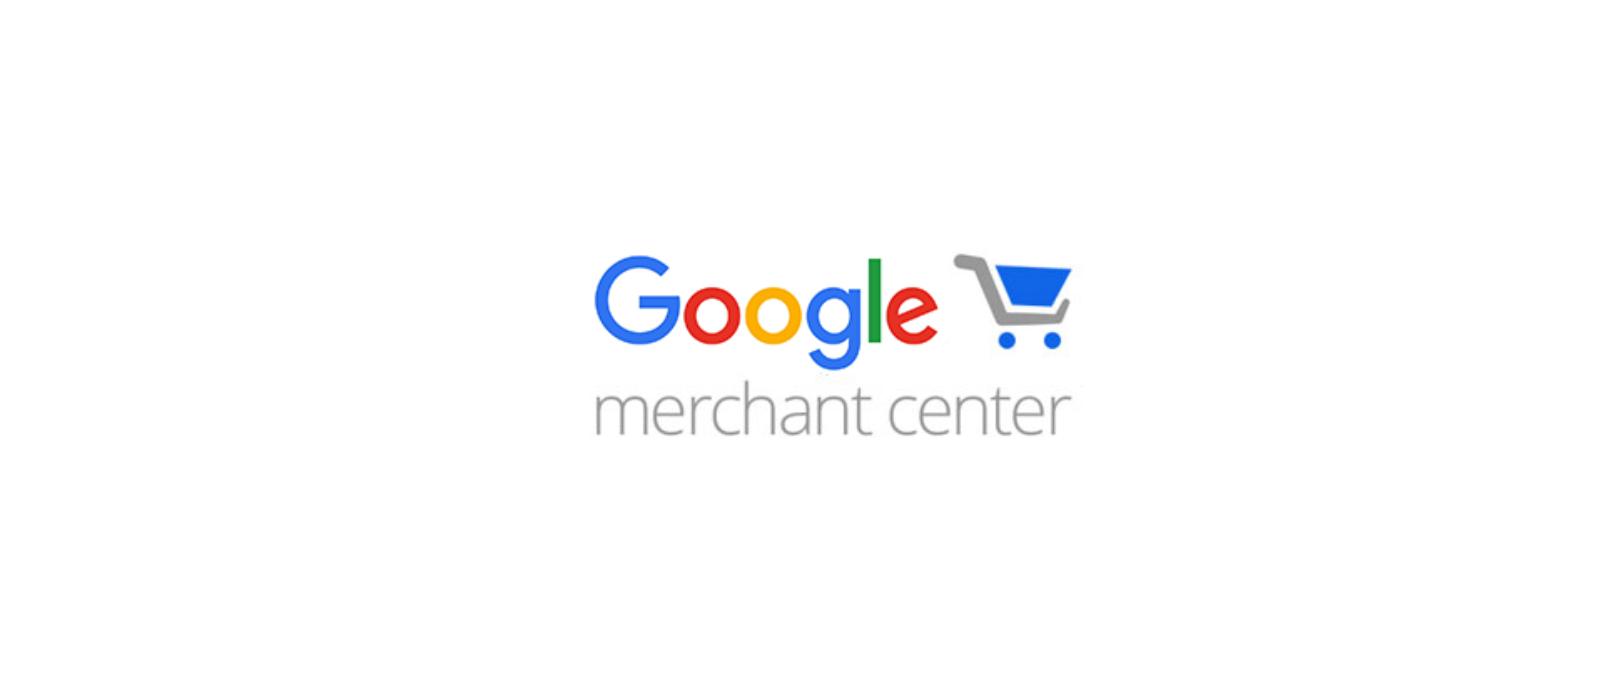 Google Merchant Center - bezpłatne narzędzie dla użytkowników do promocji produktów w Google